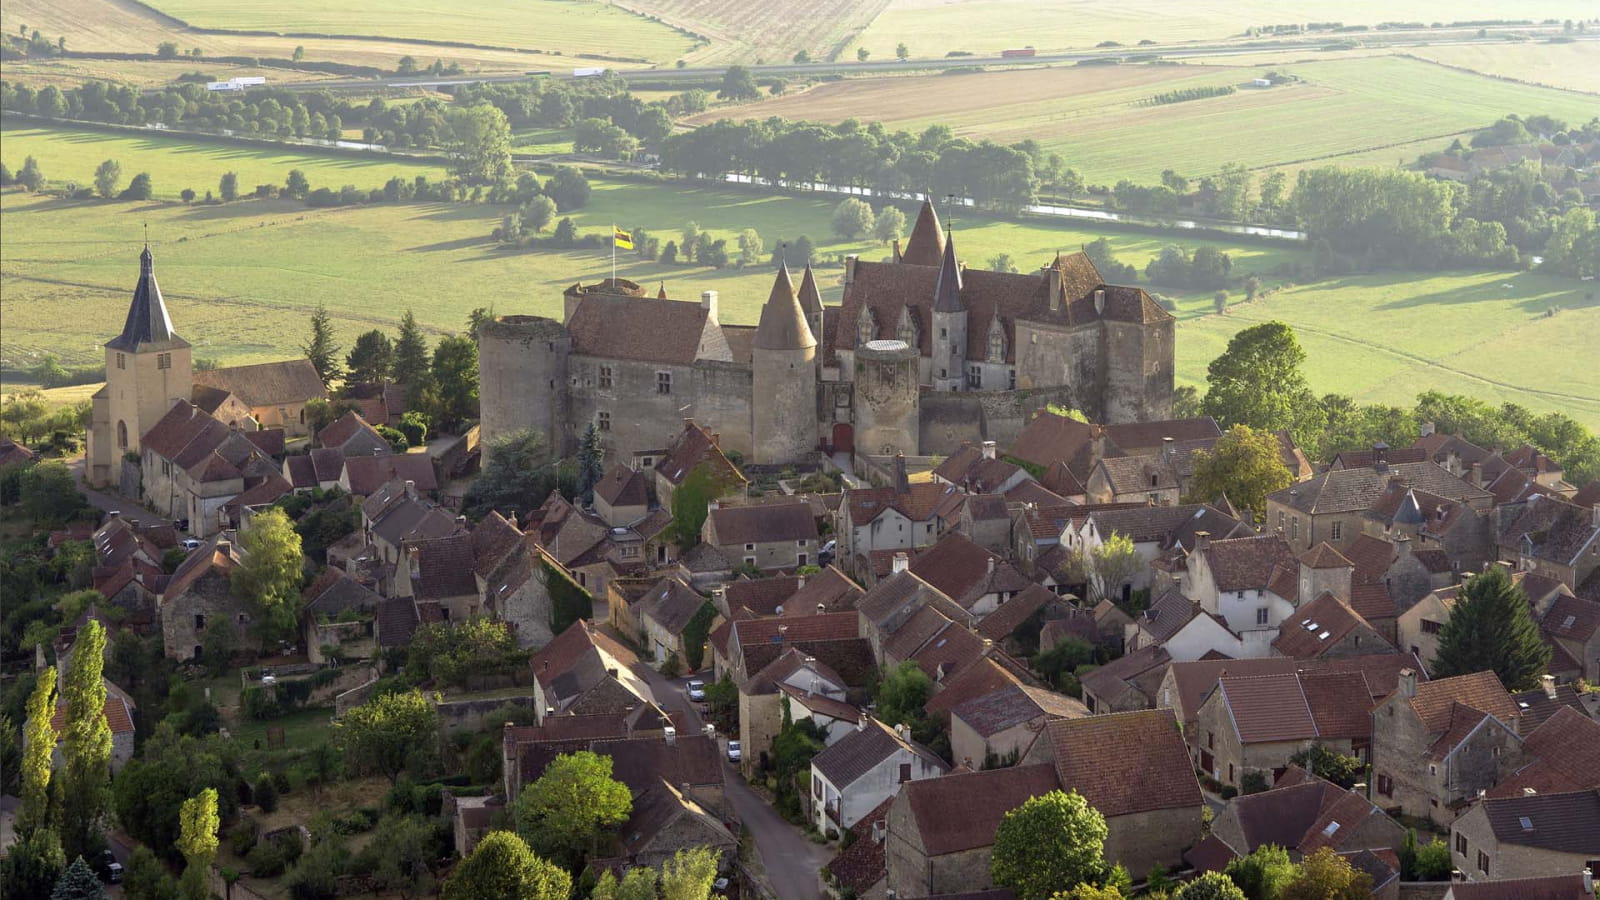 Château et village de châteauneuf en Auxois